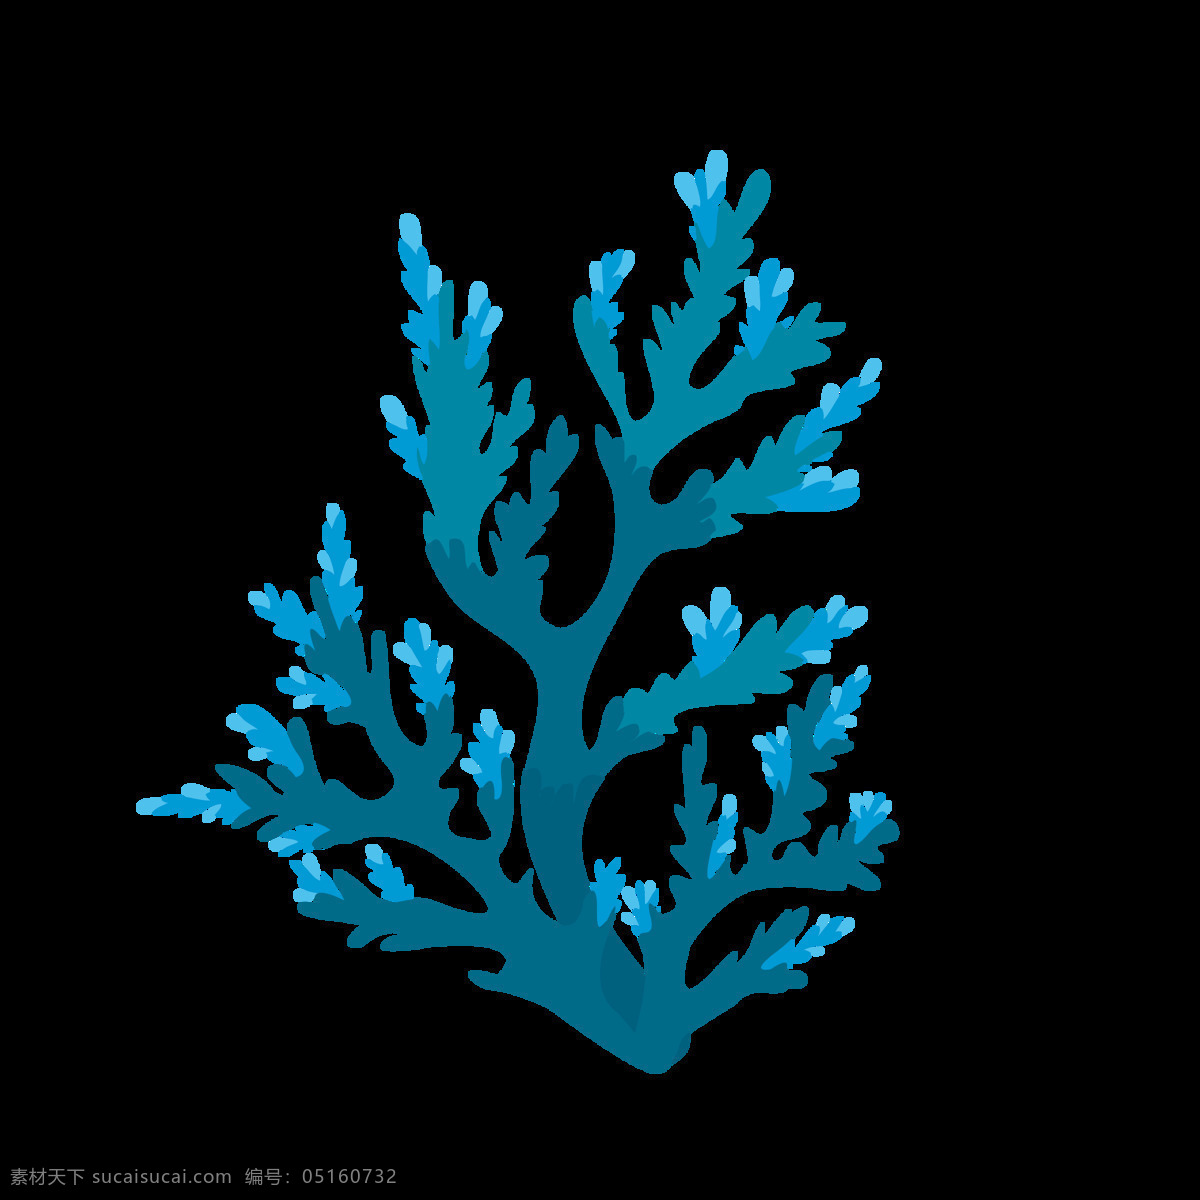 蓝色珊瑚图片 卡通 可爱 海藻 海洋 珊瑚 海洋植物 植物 生物 珊瑚图案 蓝色水藻 水藻花纹 水藻植物图案 贴图 免抠元素 服装设计